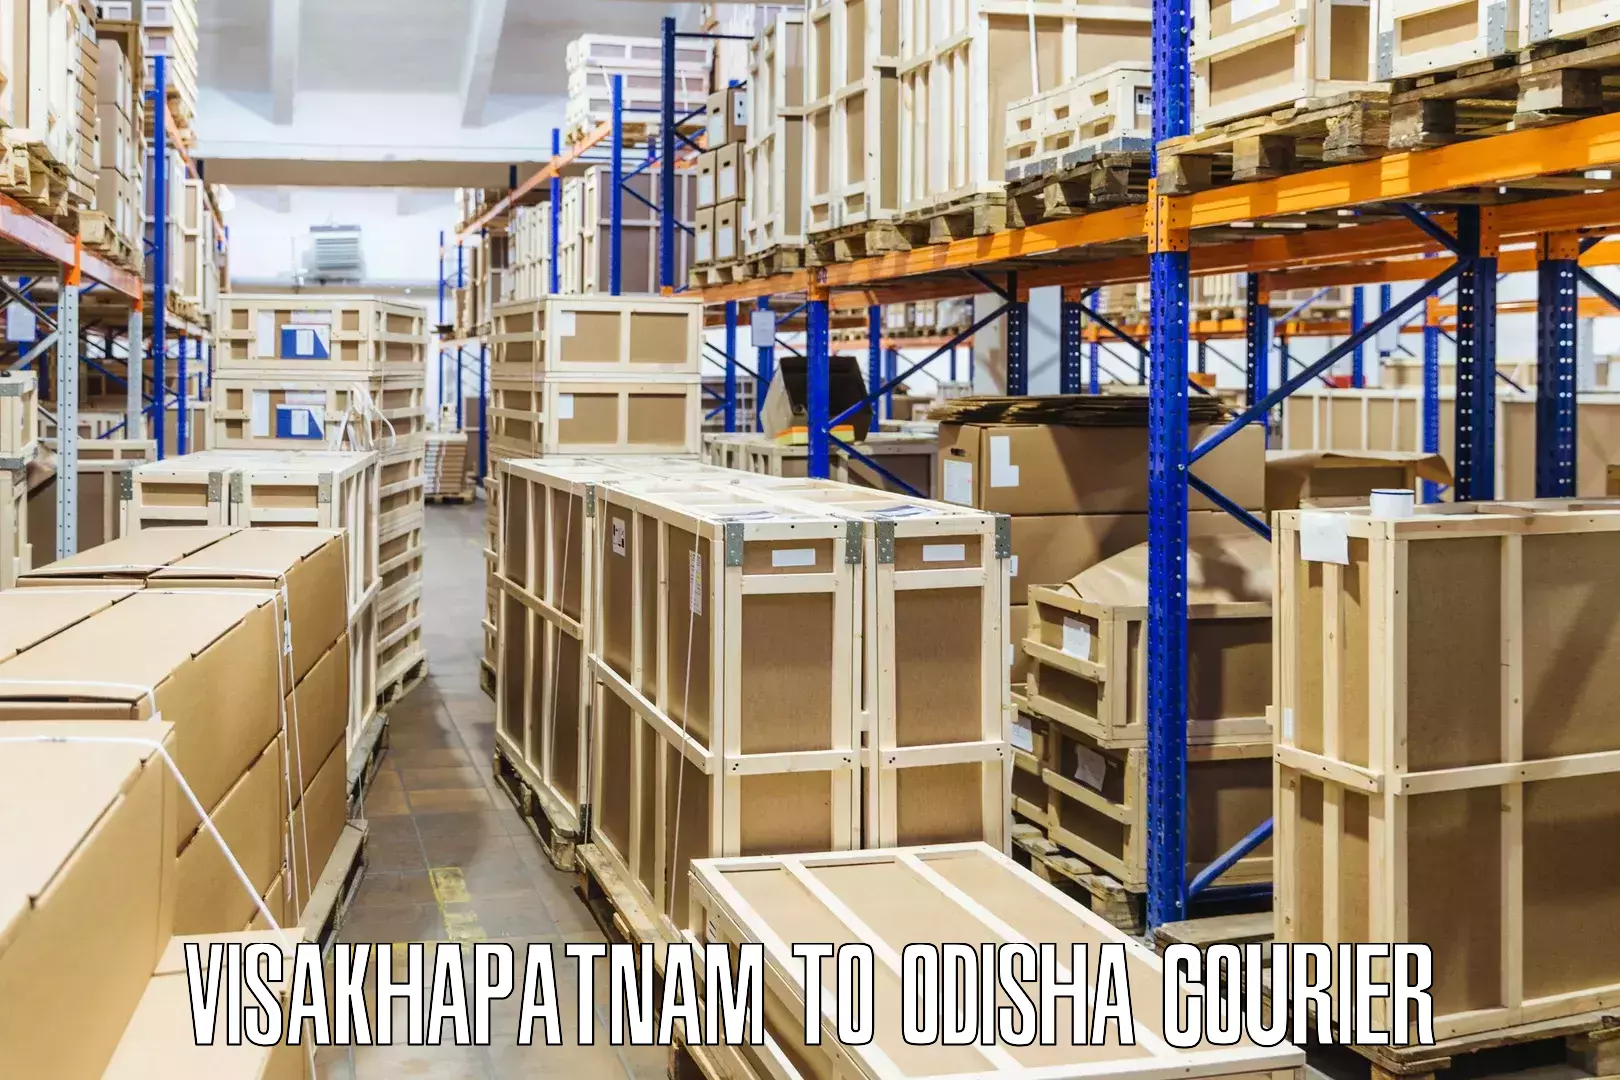 International courier rates Visakhapatnam to Odisha